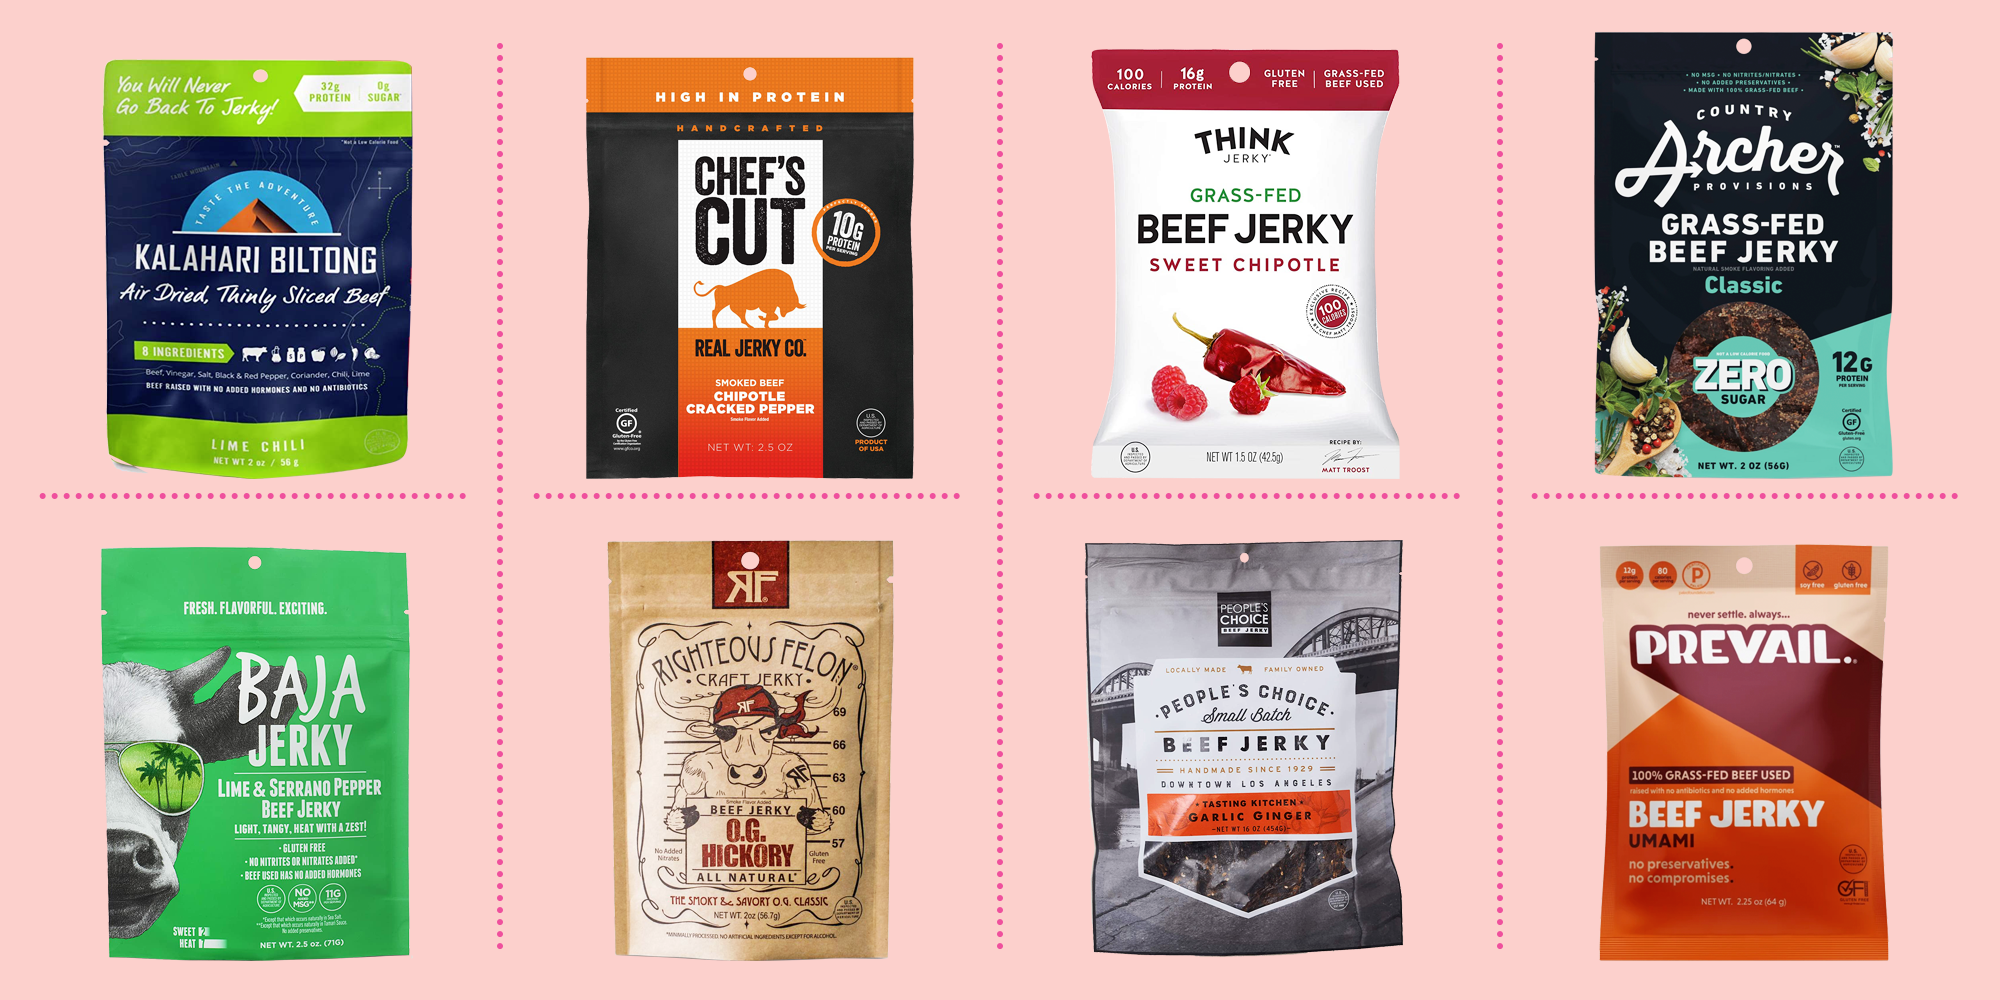 Download 8 Best Beef Jerky Brands 2020 Healthy Beef Jerky Yellowimages Mockups